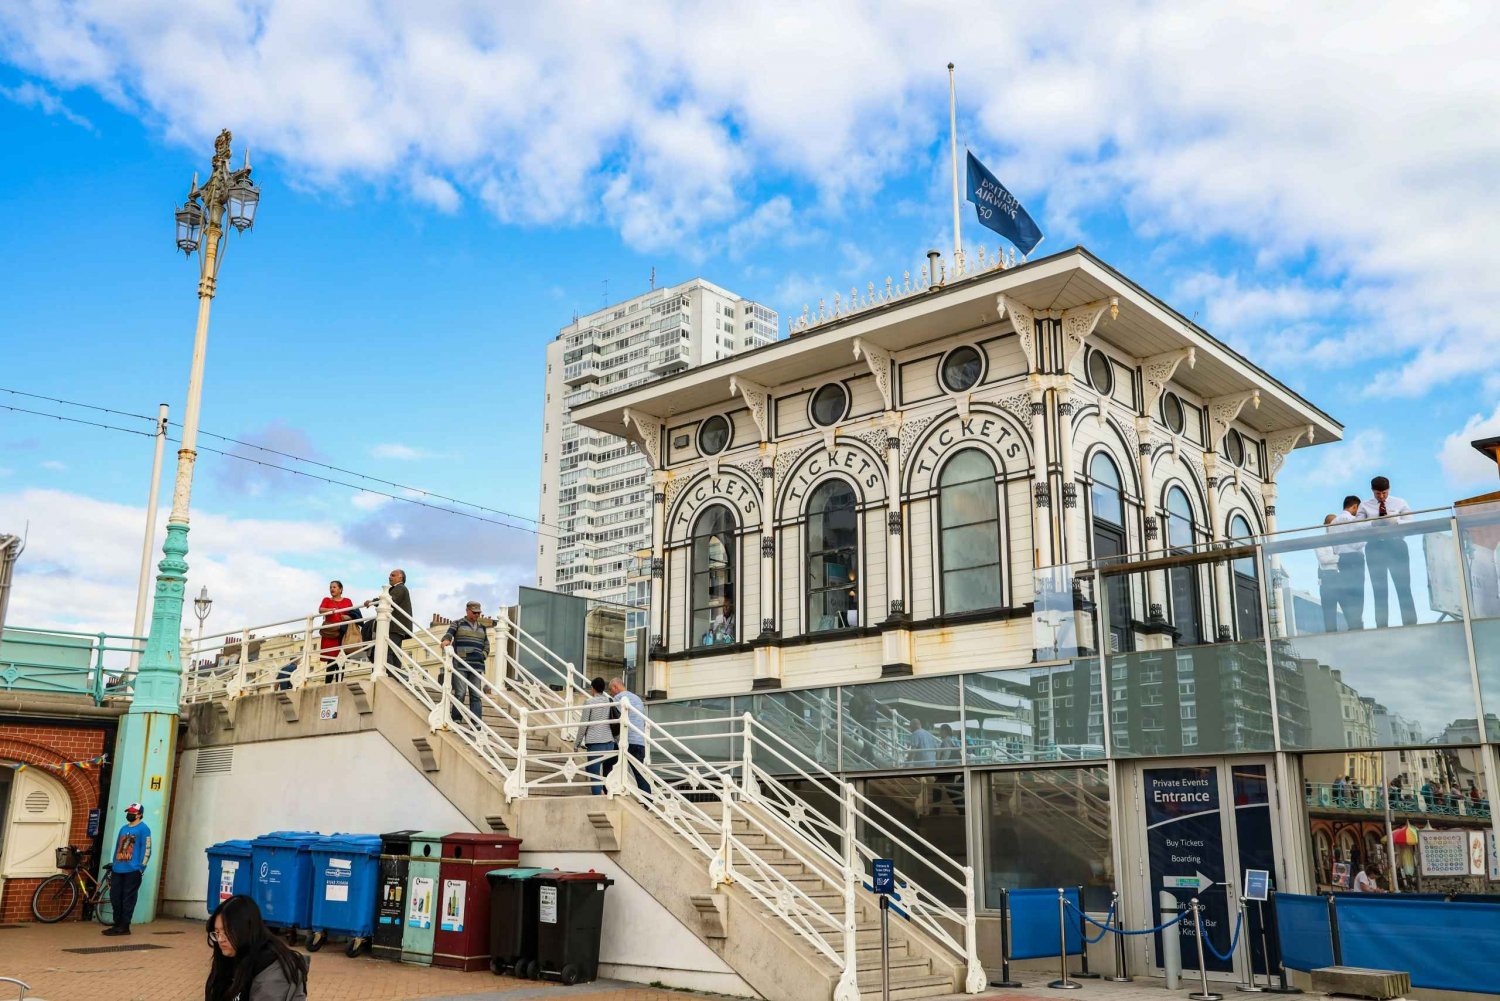 Brighton : Royal Resort Adventure - Un jeu de ville guidé par des indices